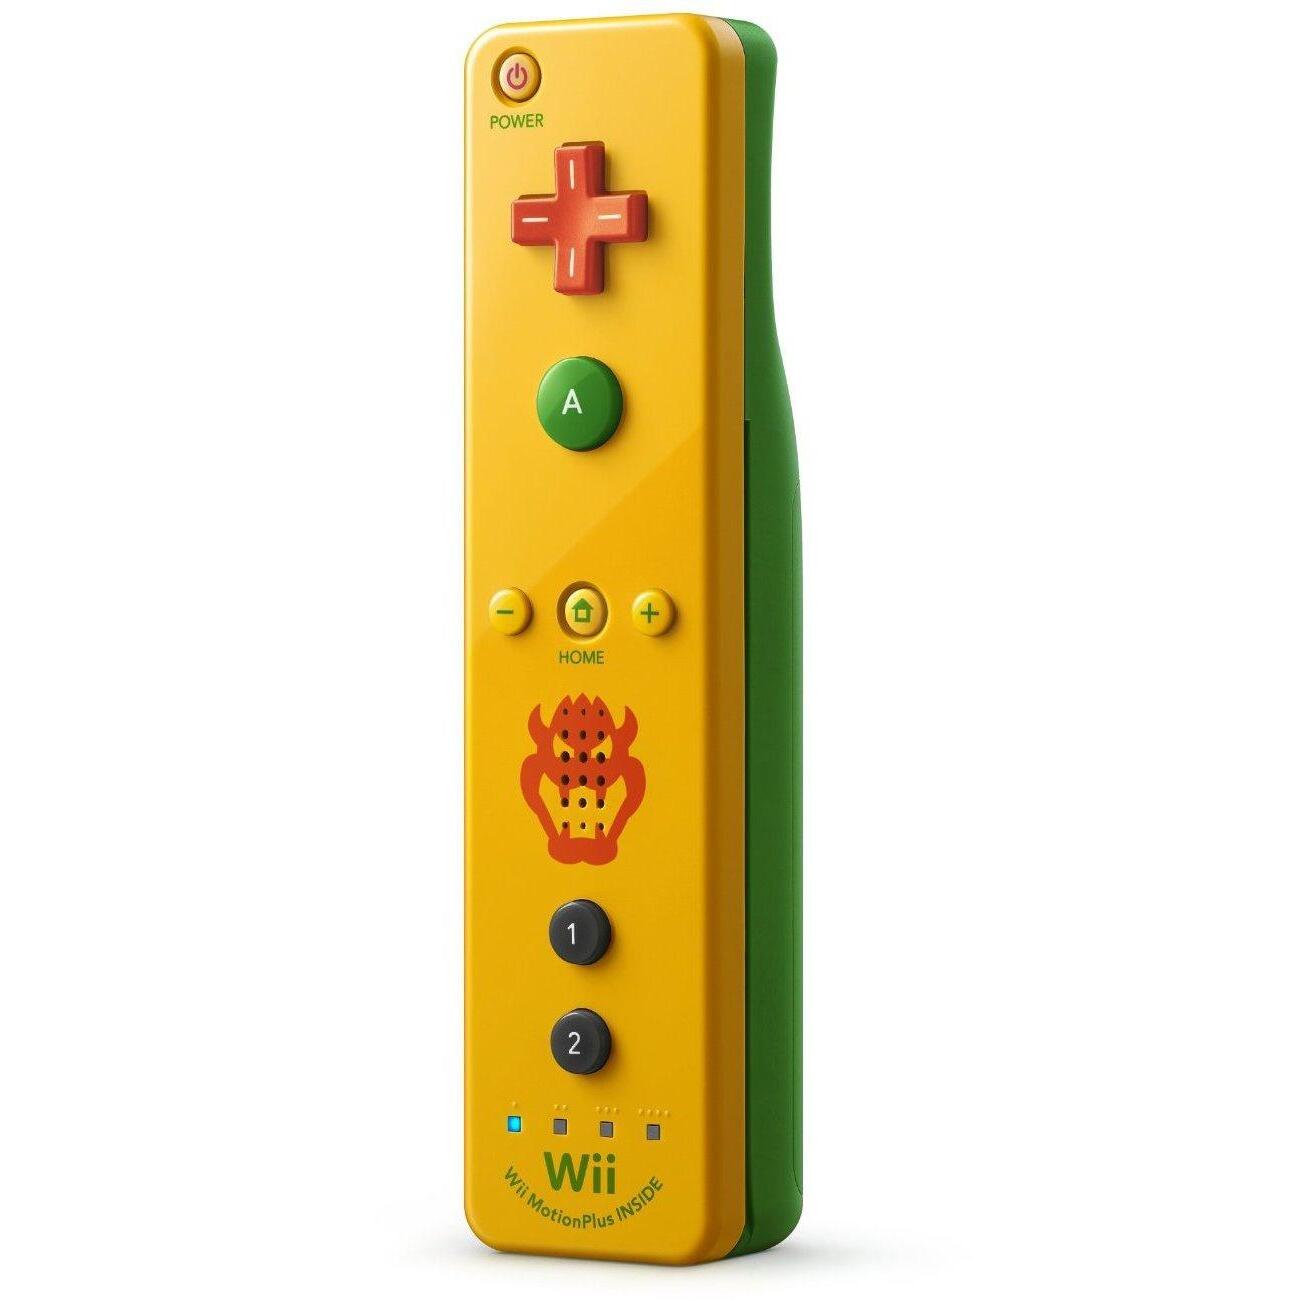 welzijn Skim Larry Belmont Originele Wii / Wii U Controller Motion Plus Geel / Groen - Bowser Editie -  Nintendo (Wii U) kopen - €51